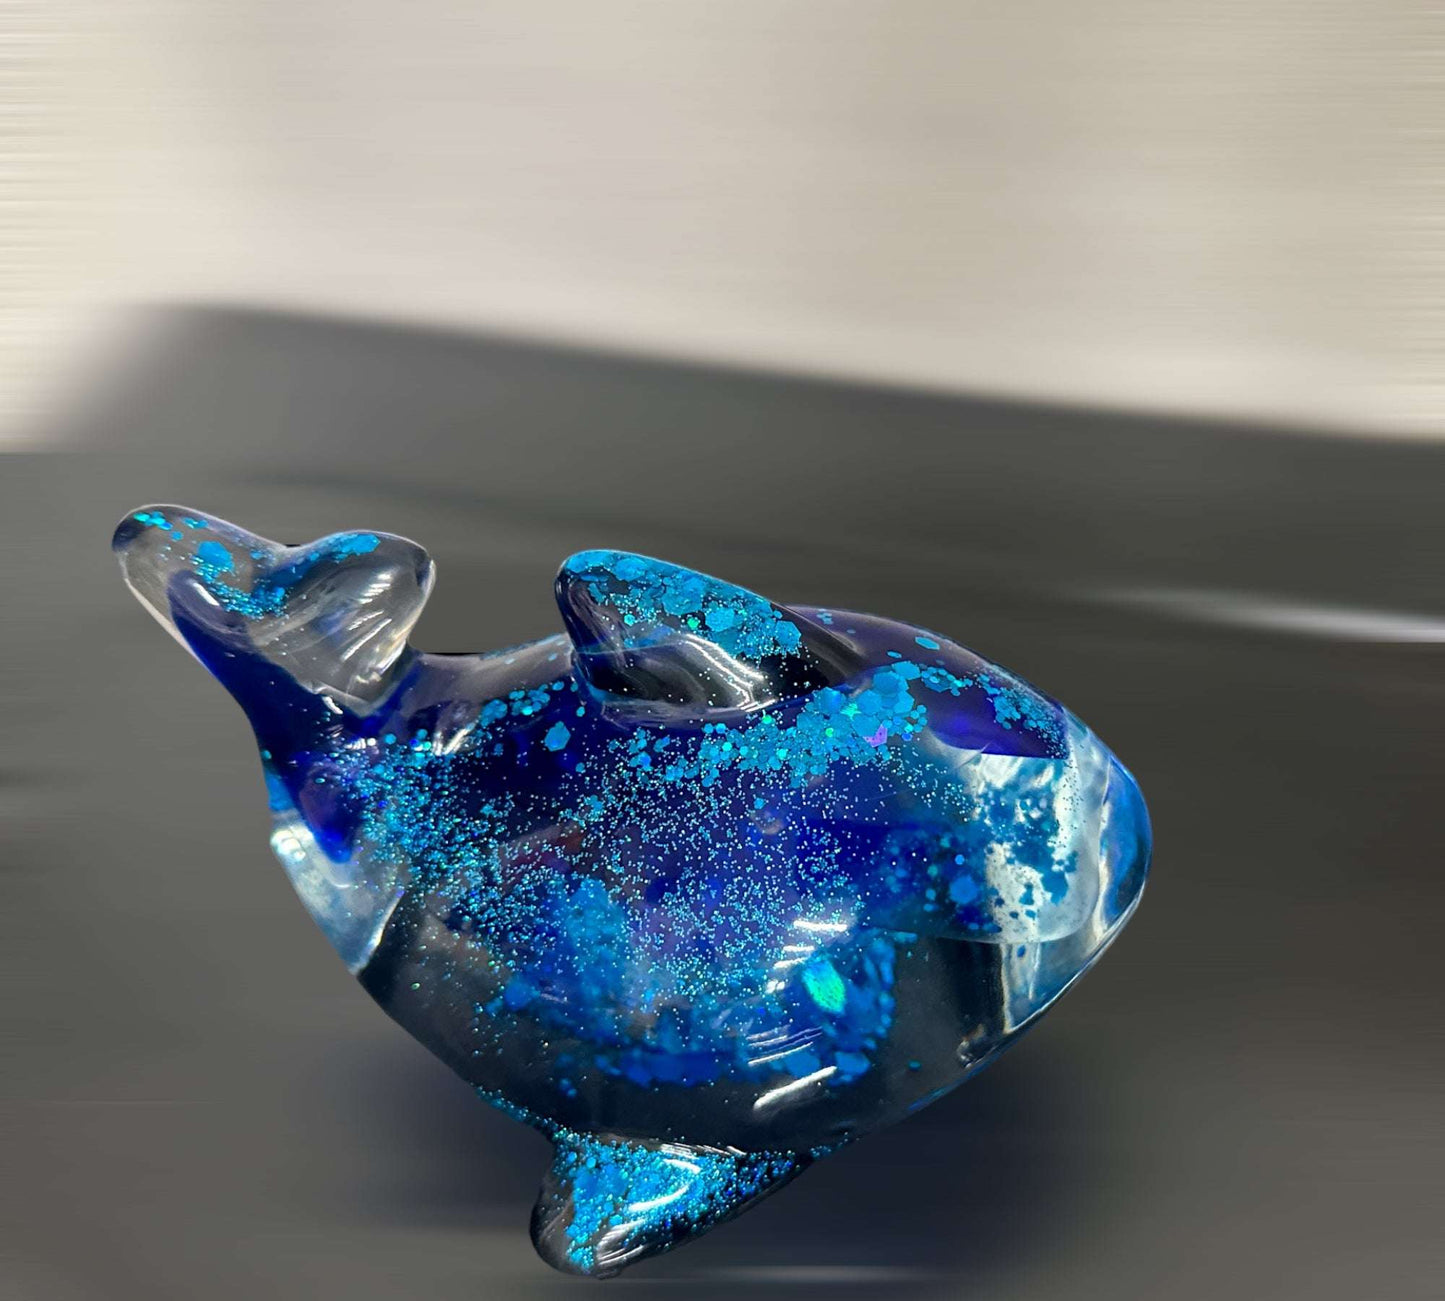 Baleine d'un temps : plongez dans la magie de l'océan avec ma sculpture fantaisiste en verre de mer en résine époxy